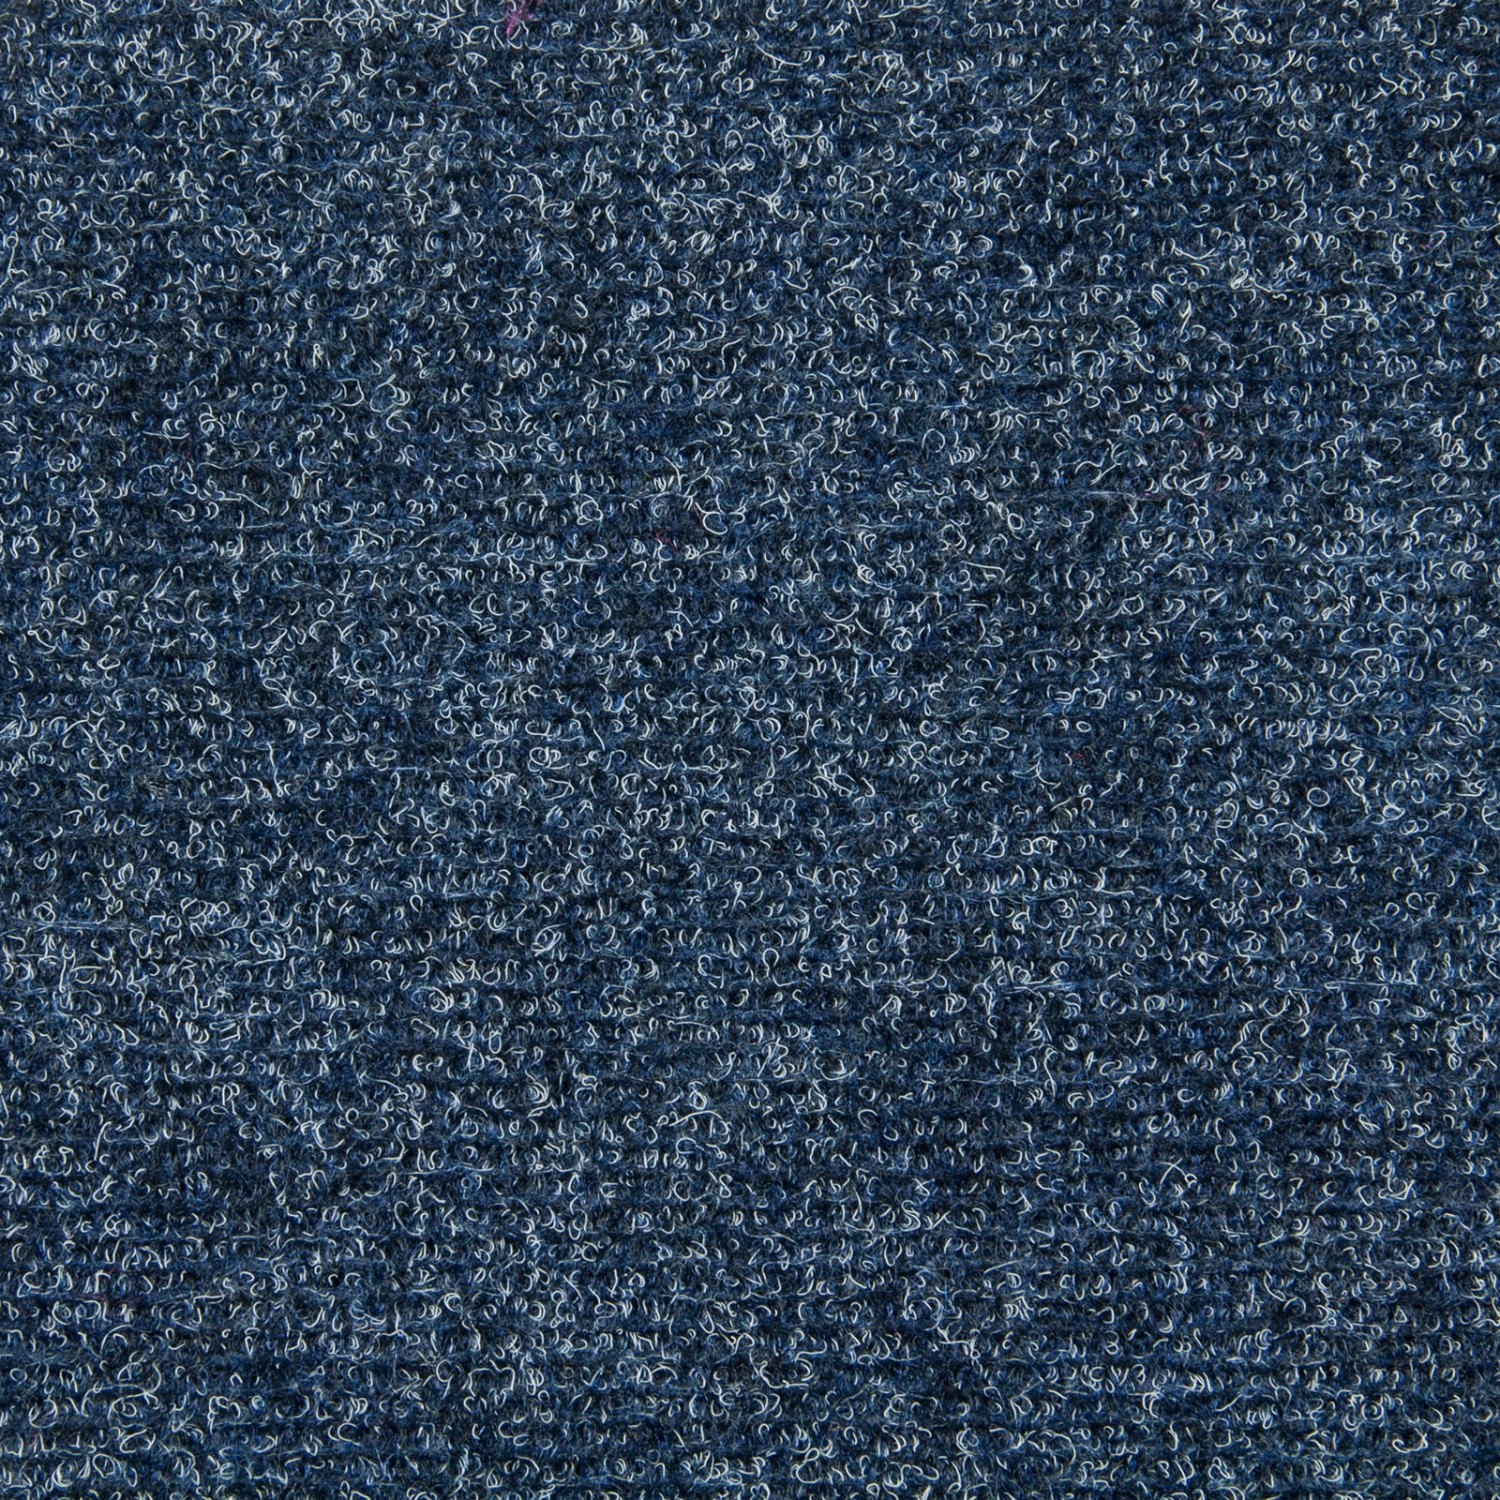 Schatex Nadelfilz Teppichboden Als Fliesen Selbstliegende Teppichfliesen Blau In 50x50 Cm Nadelvlies Teppichbodenfliesen